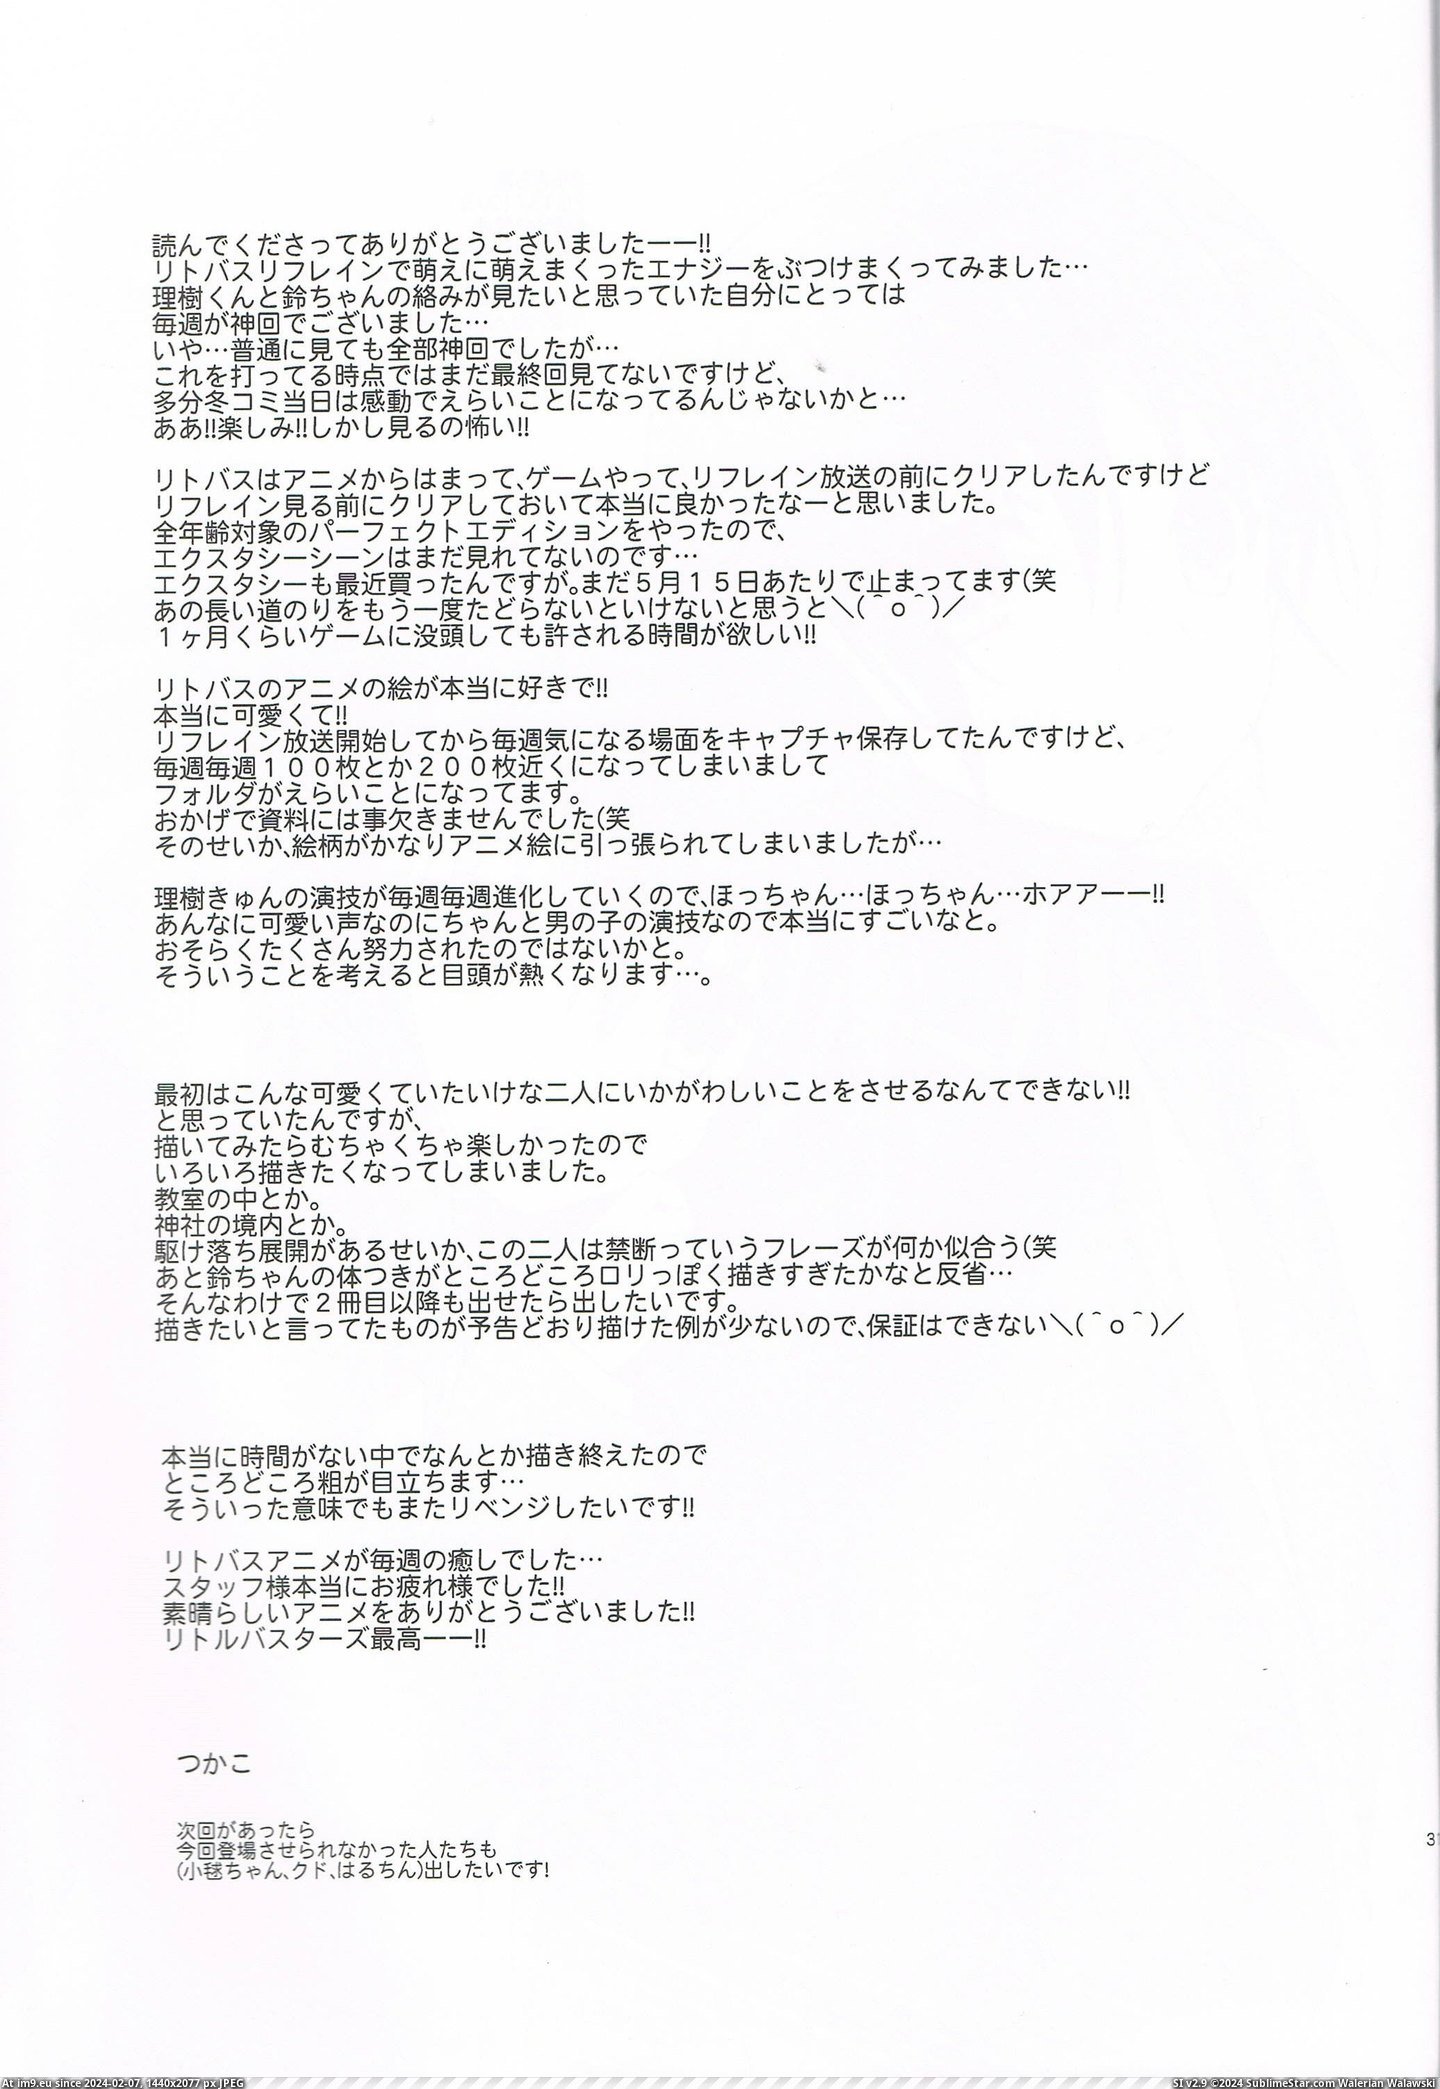 #Hentai #Busters #Saikou #Gallery [Hentai] Little Busters Saikou! (Little Busters Hentai Gallery) 62 Pic. (Изображение из альбом My r/HENTAI favs))